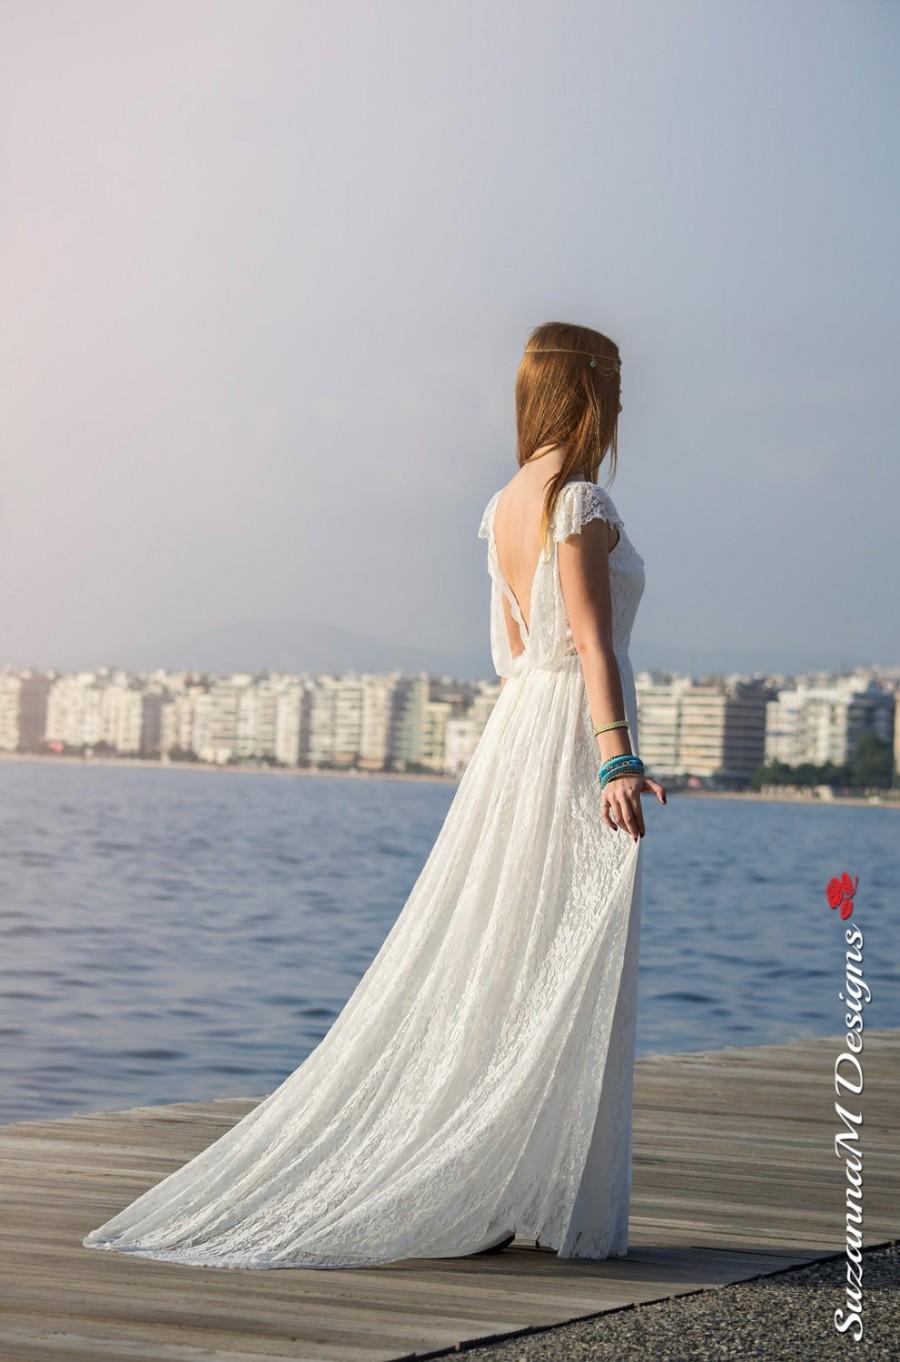 زفاف - Wedding Dress, Bohemian Wedding Gown, Boho Bridal Dress, Long Wedding Dress, Ivory Lace Dress, Lace Wedding Dress Handmade bySuzannaMDesigns